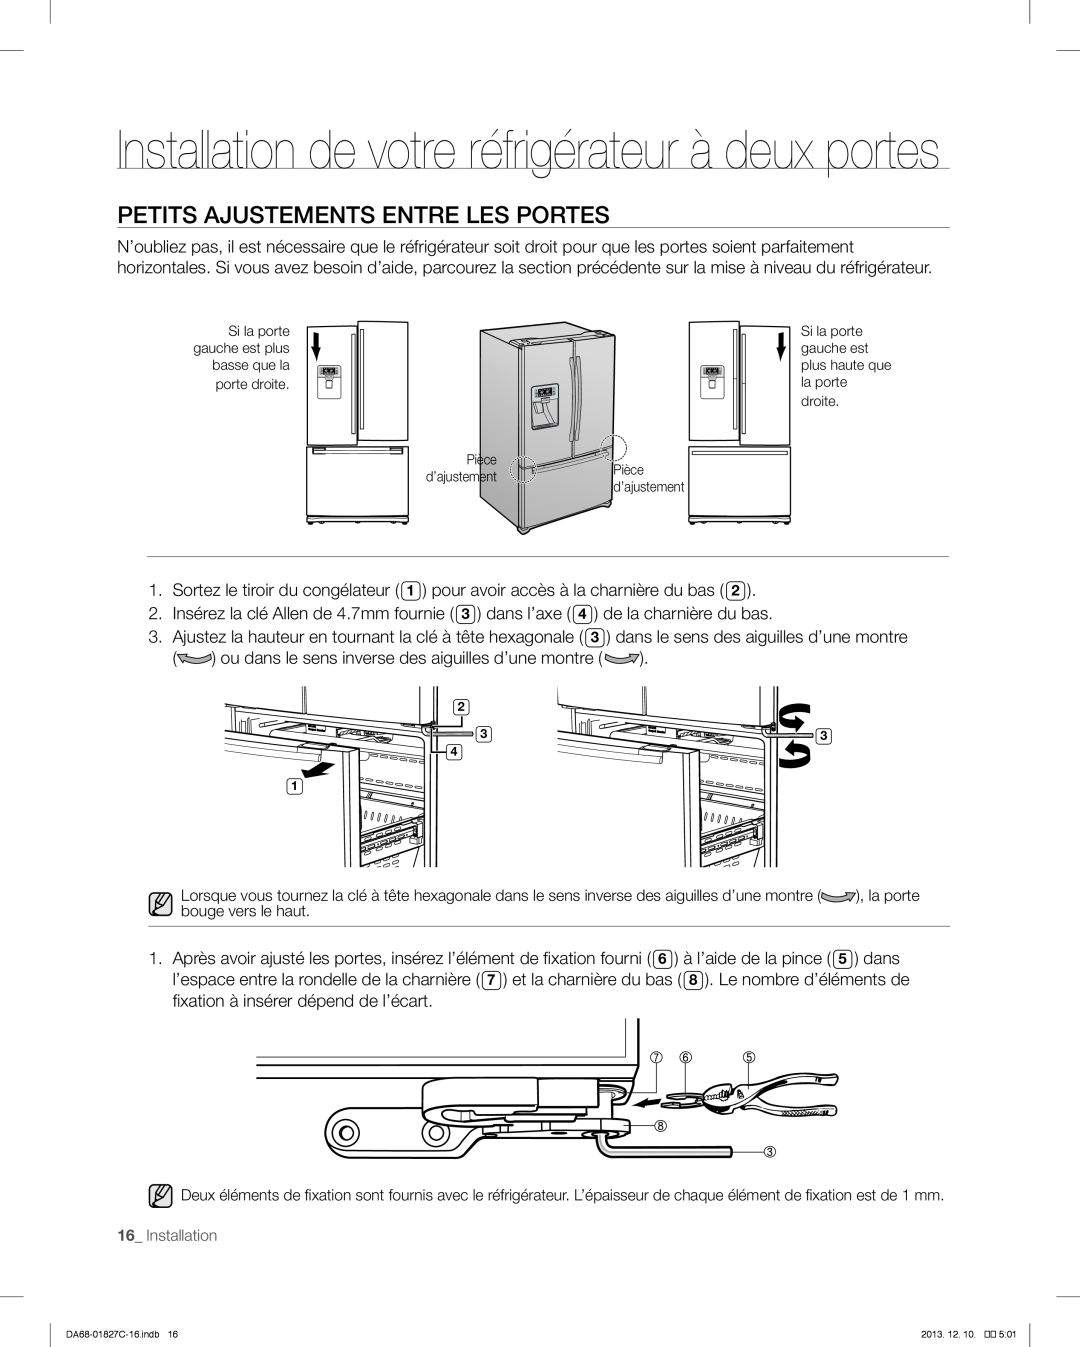 Samsung RFG237AARS Petits Ajustements Entre Les Portes, Installation de votre réfrigérateur à deux portes, porte droite 